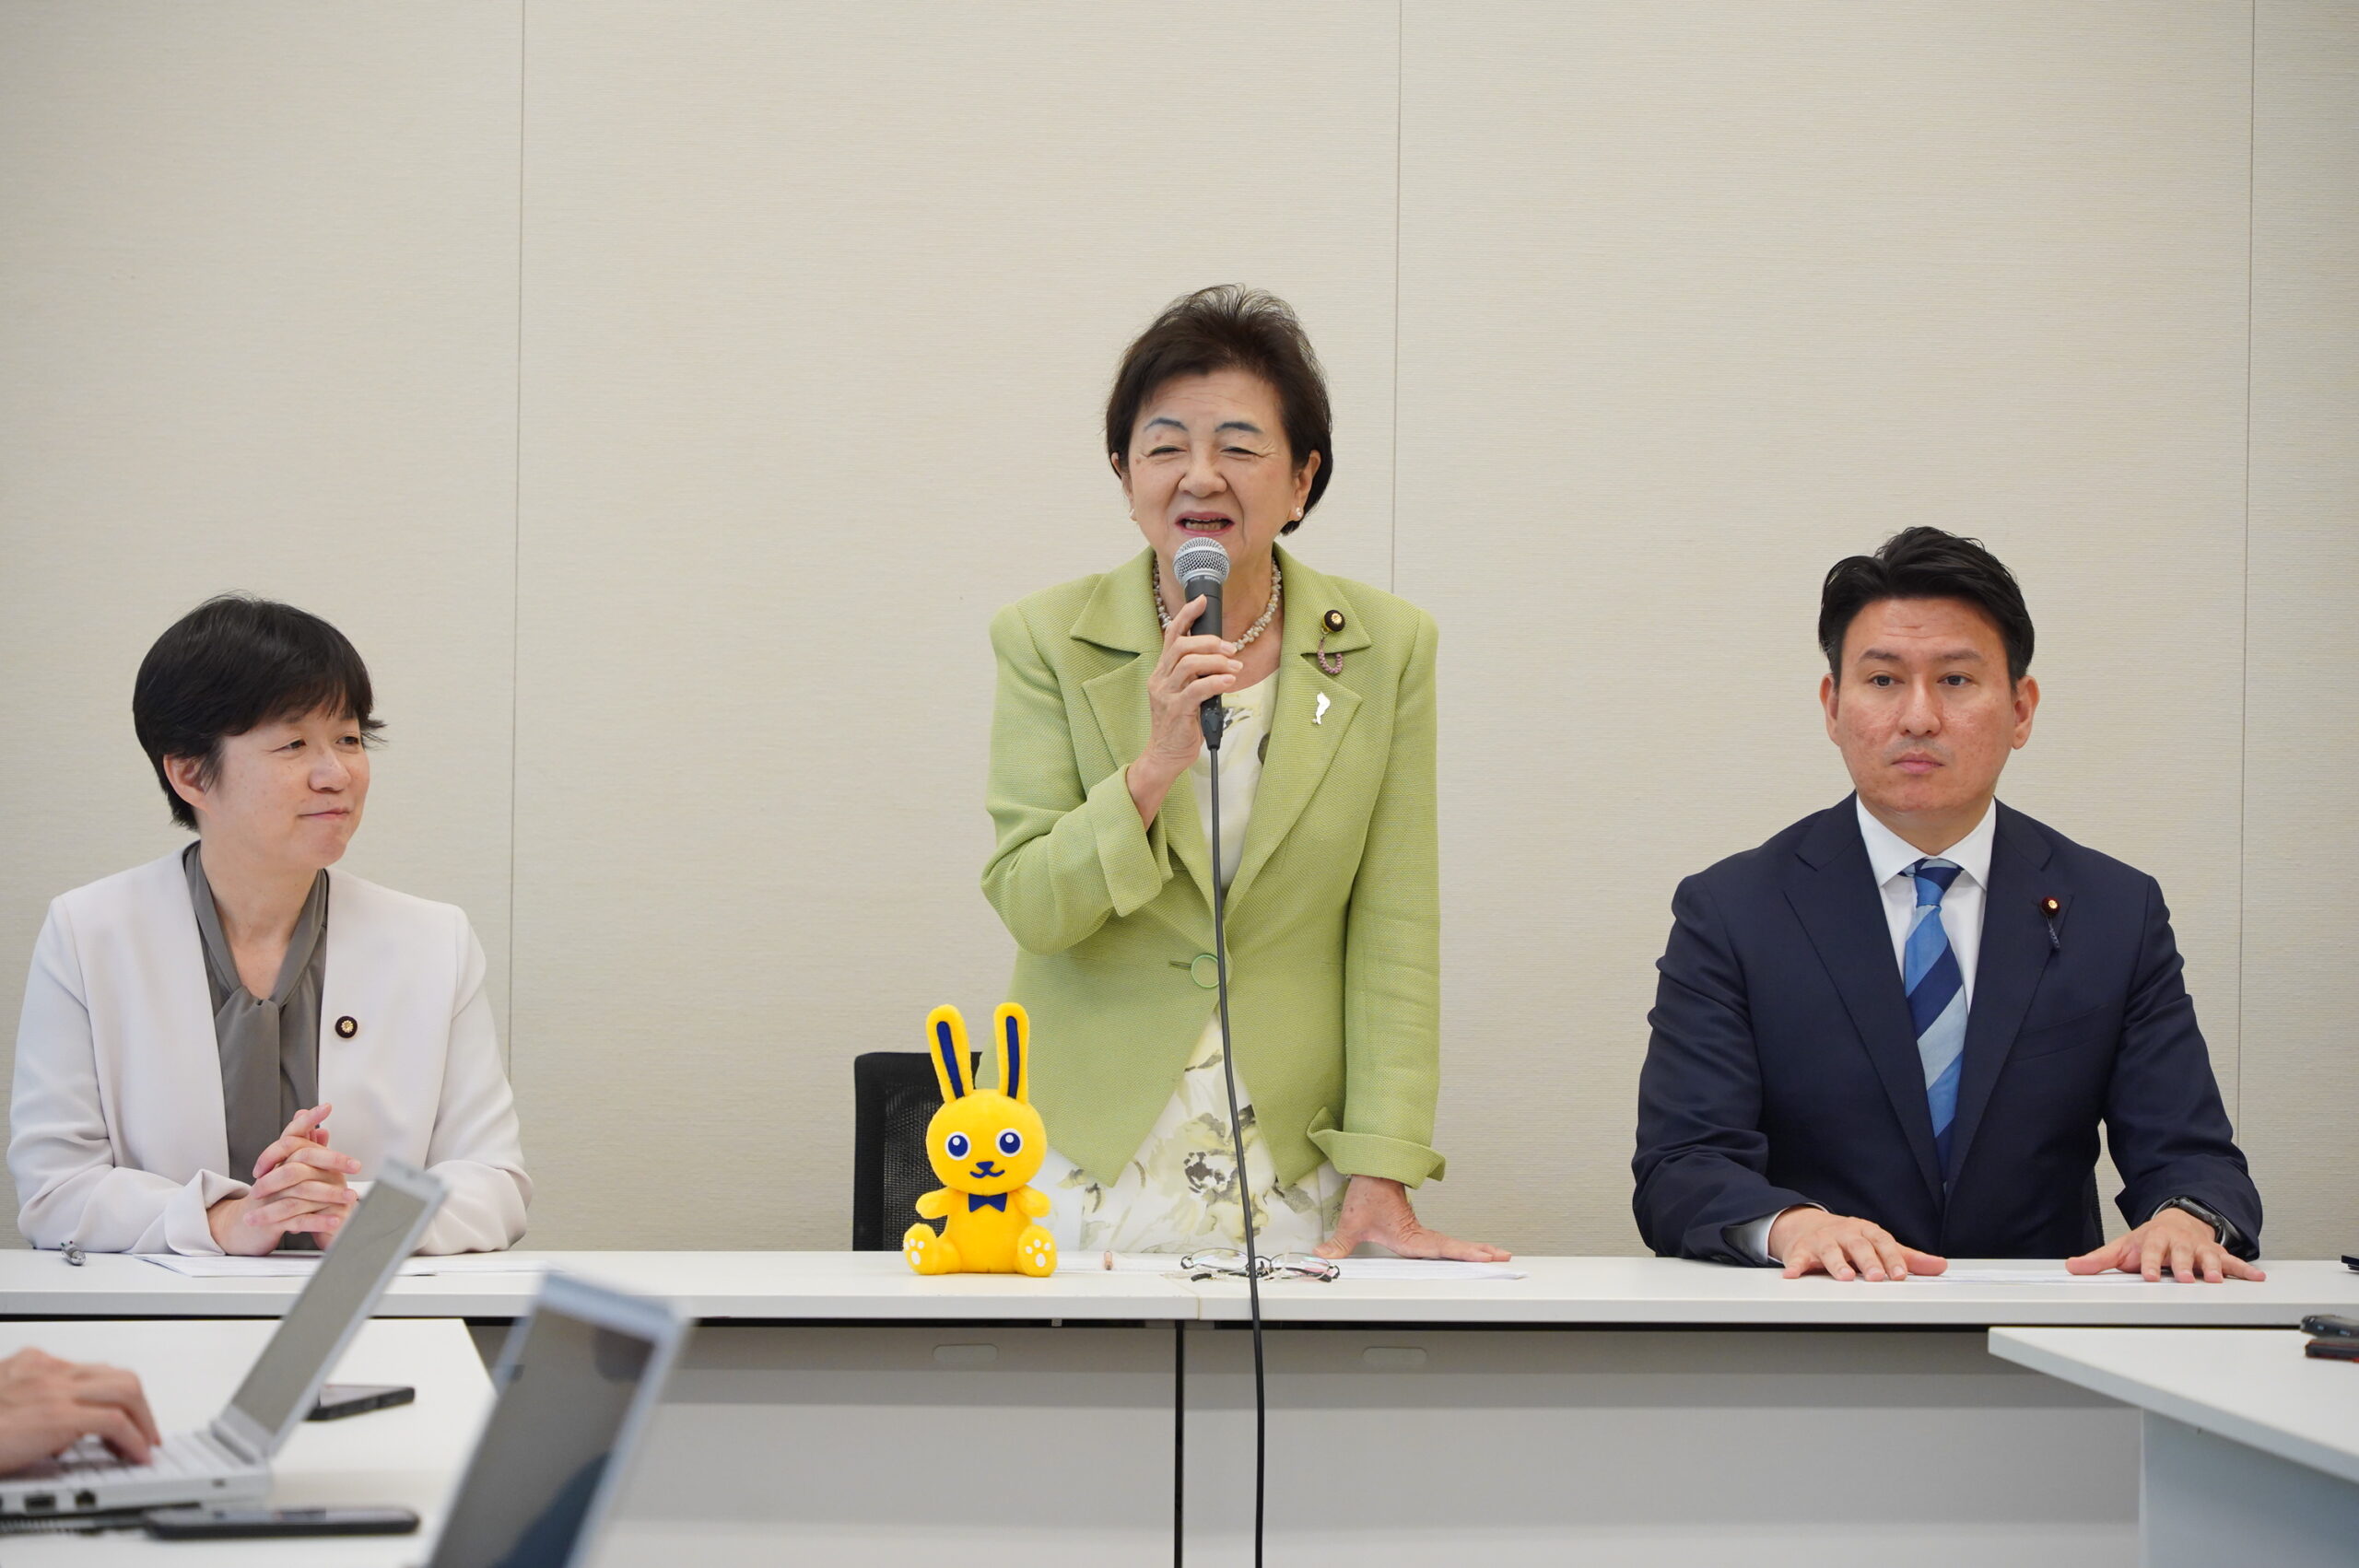 嘉田由紀子参議院議員が国民民主党に入党